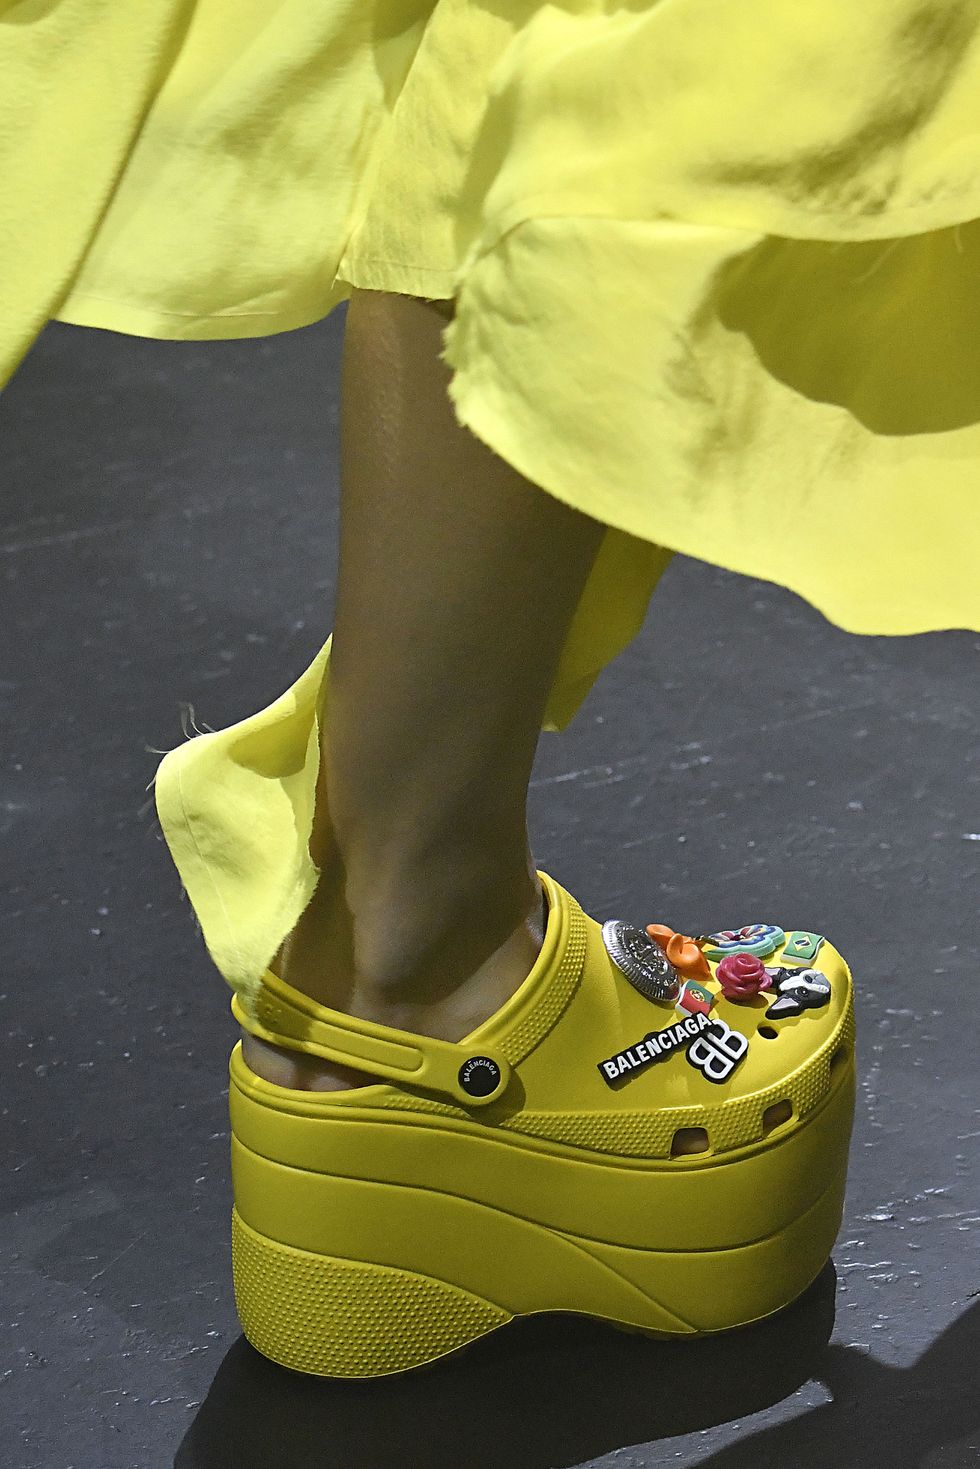 Footwear, Yellow, Shoe, Outdoor shoe, High heels, 